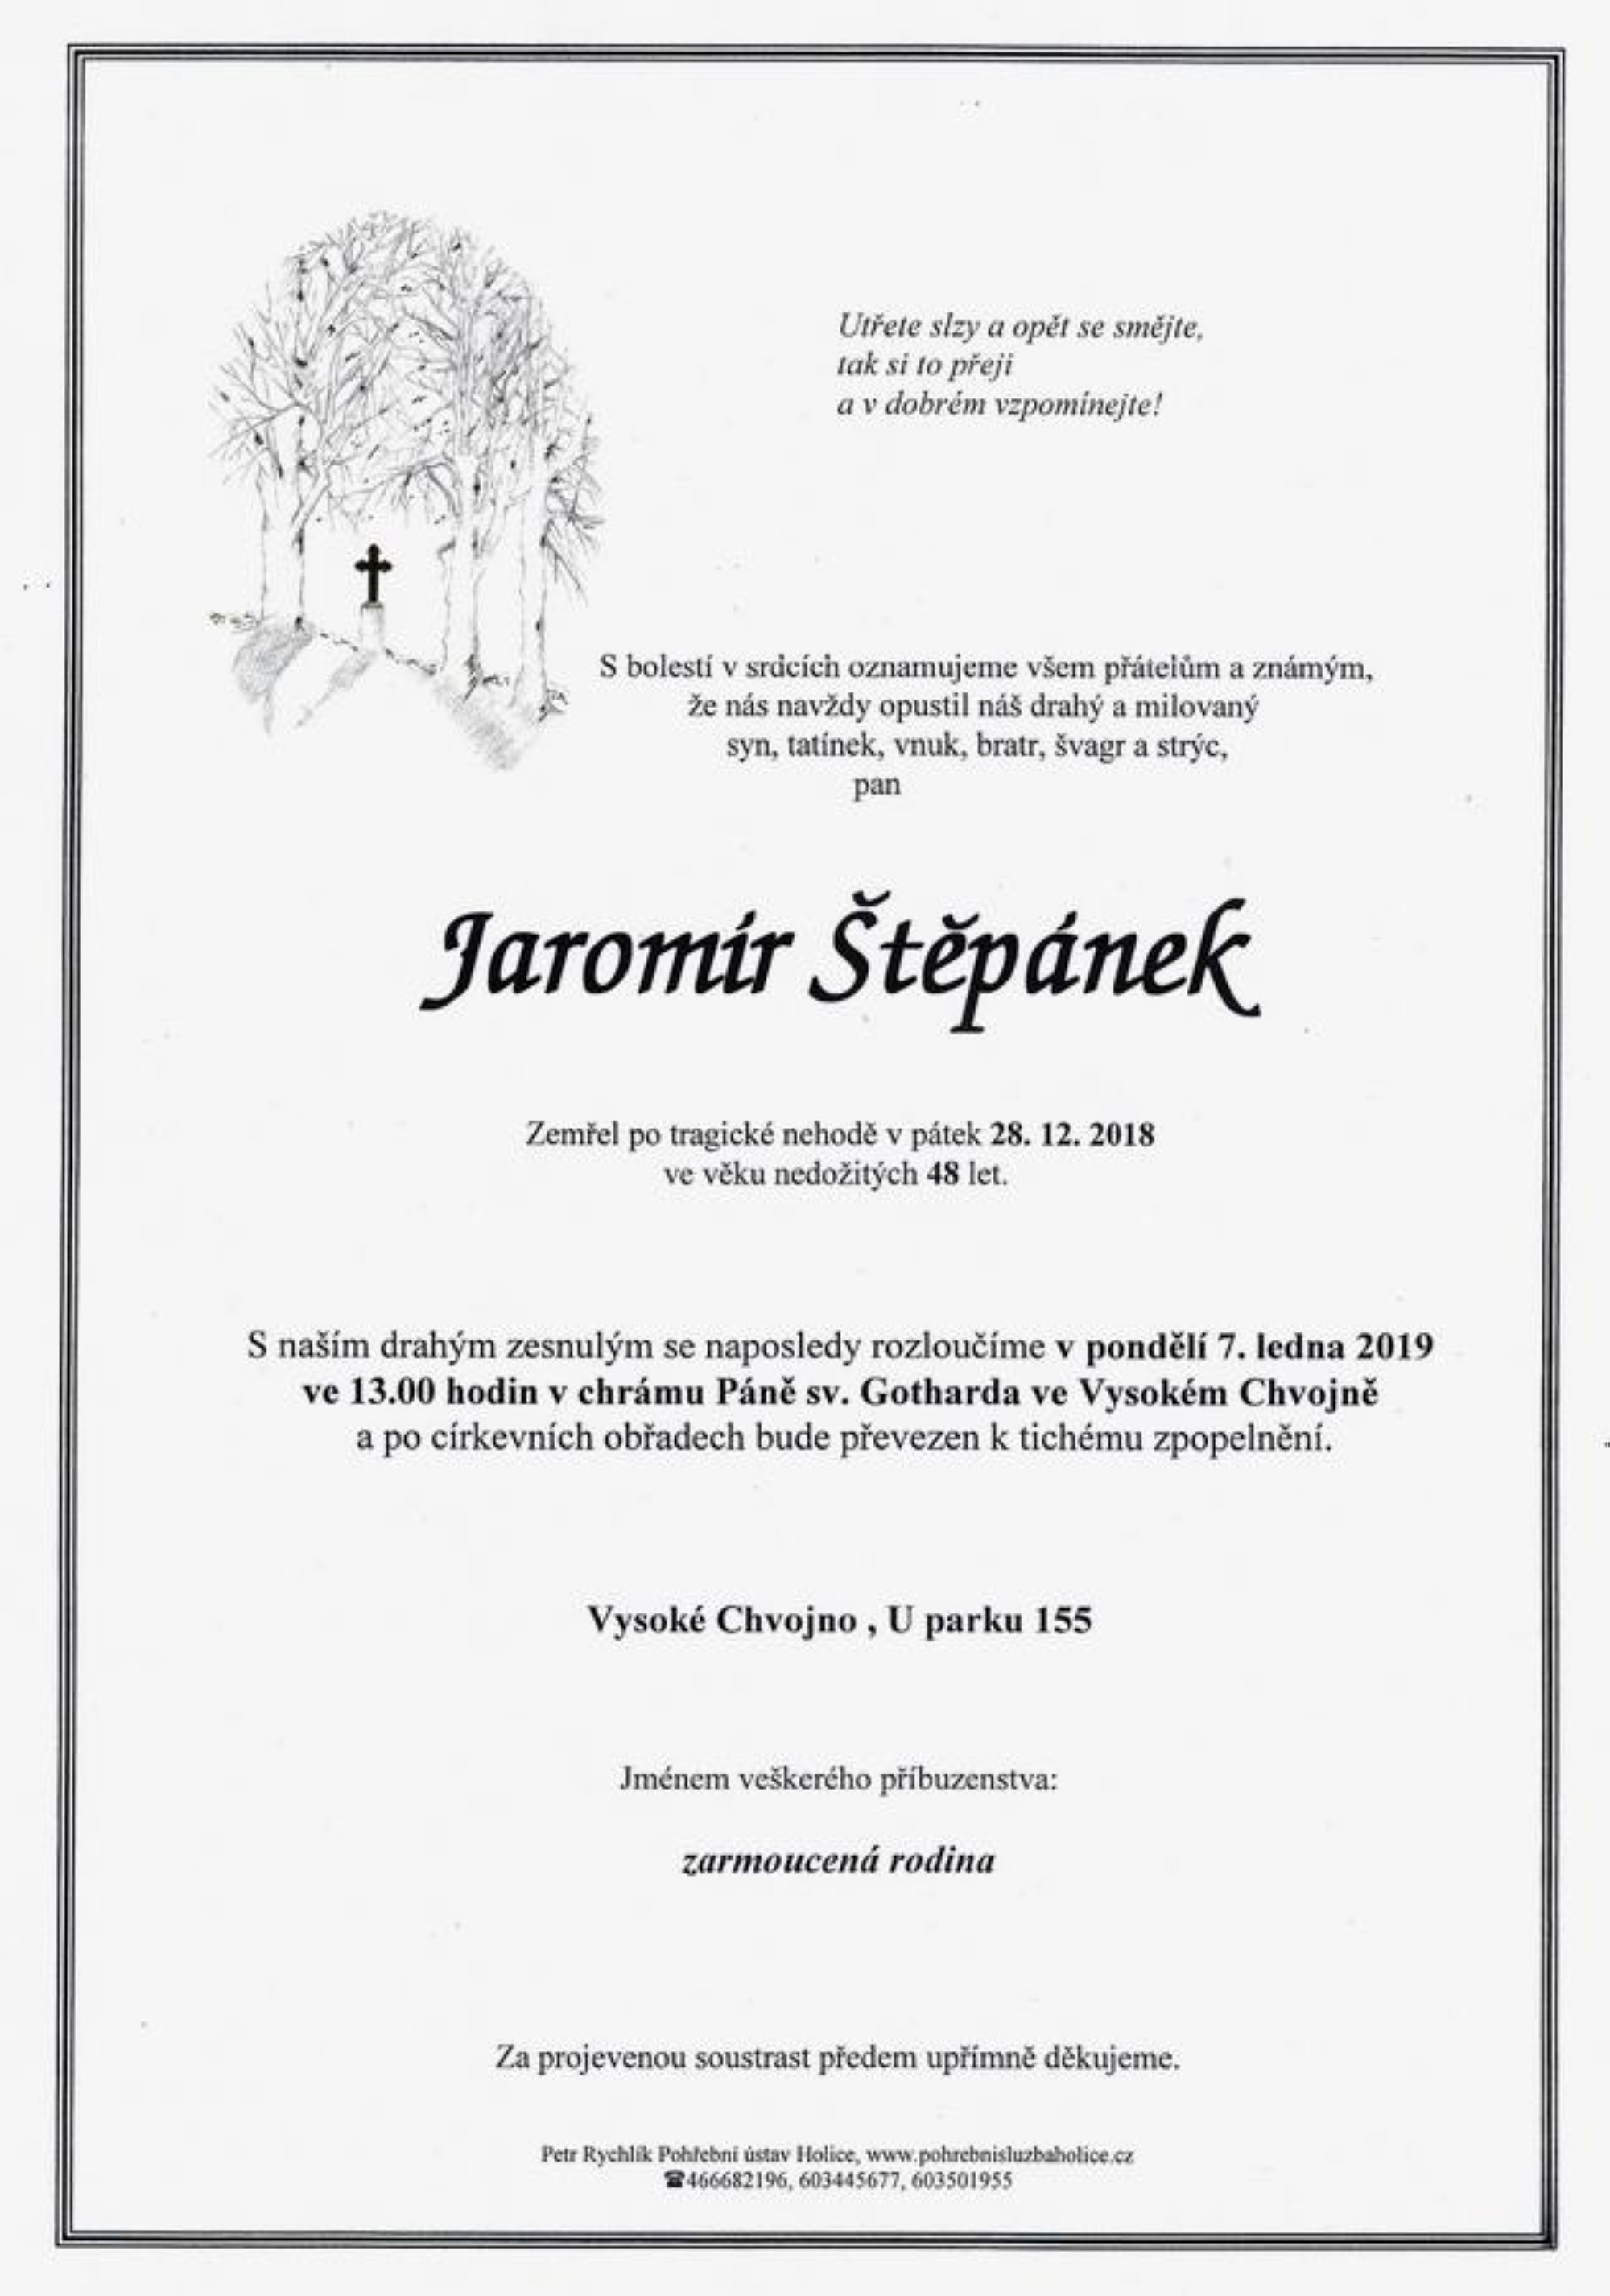 Jaromír Štěpánek